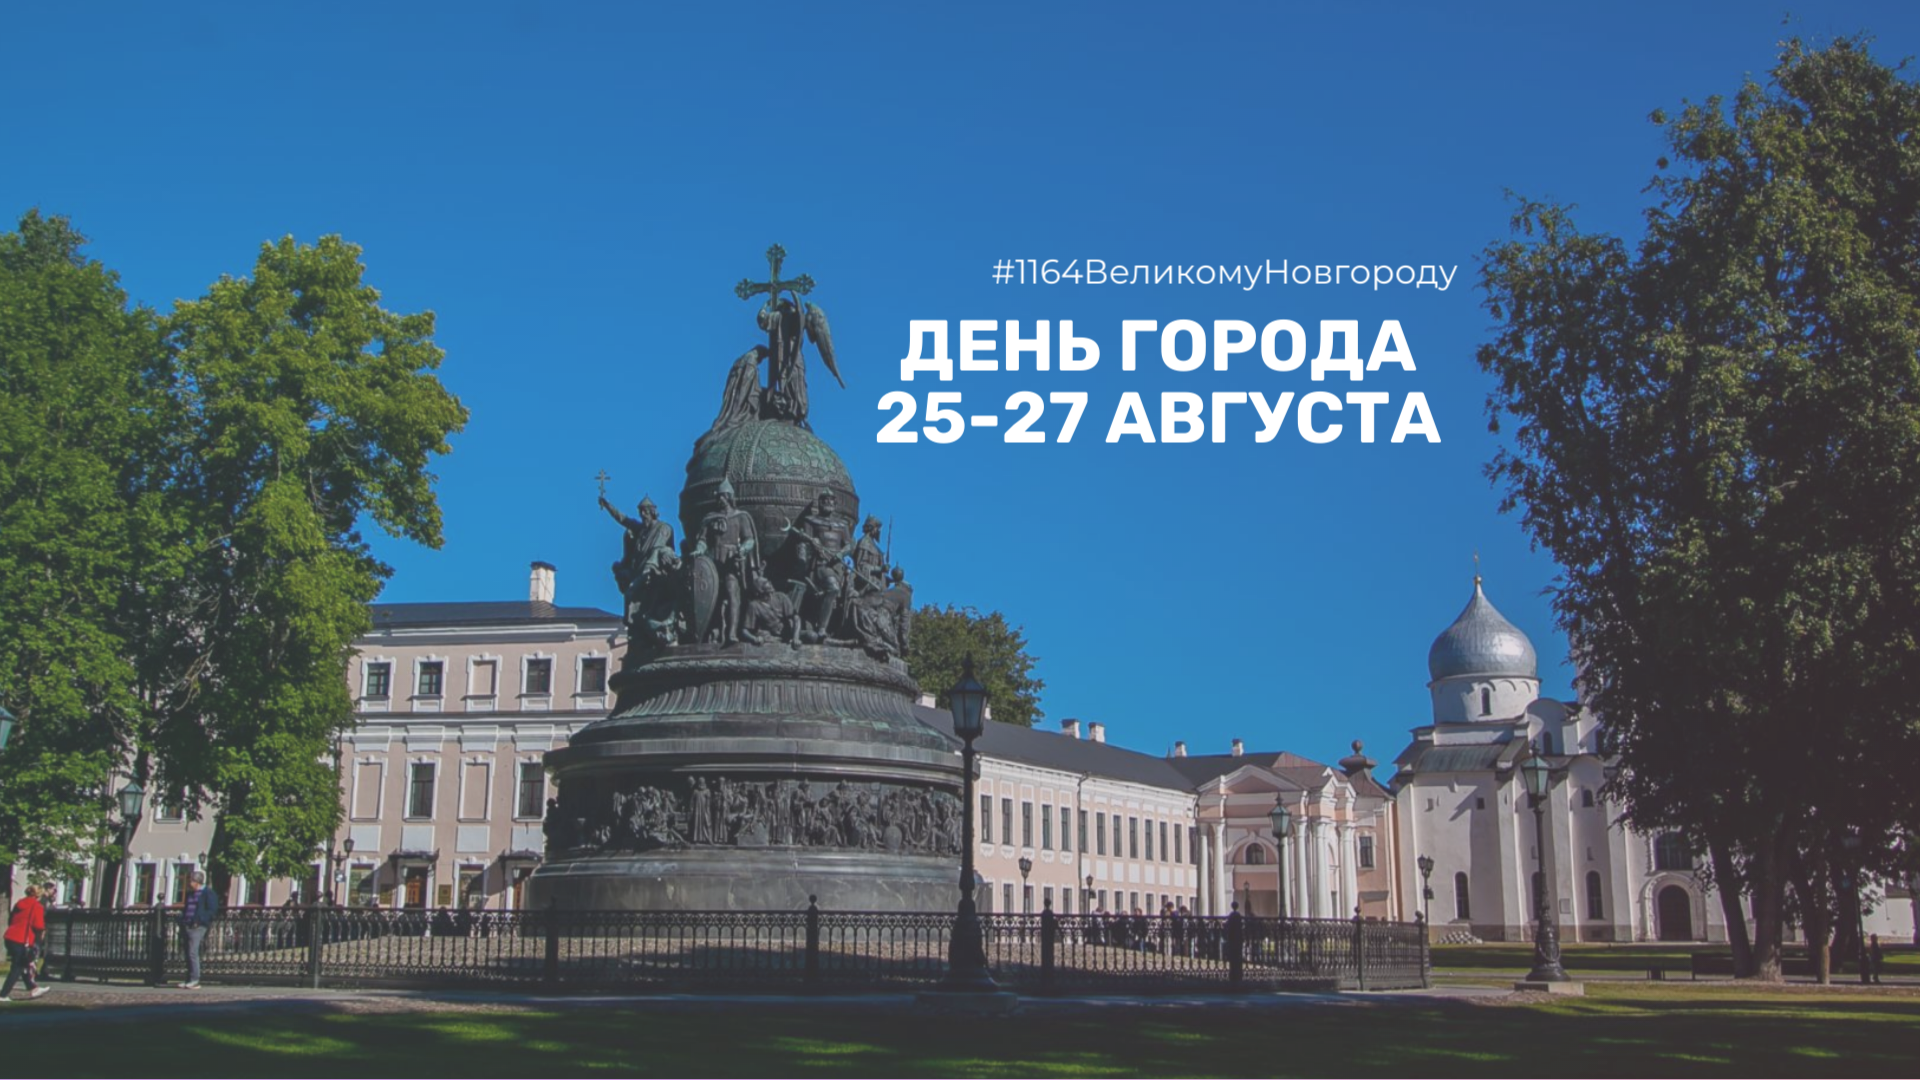 Праздничные мероприятий Дня города стартуют 25 августа на площади Победы Софийской.